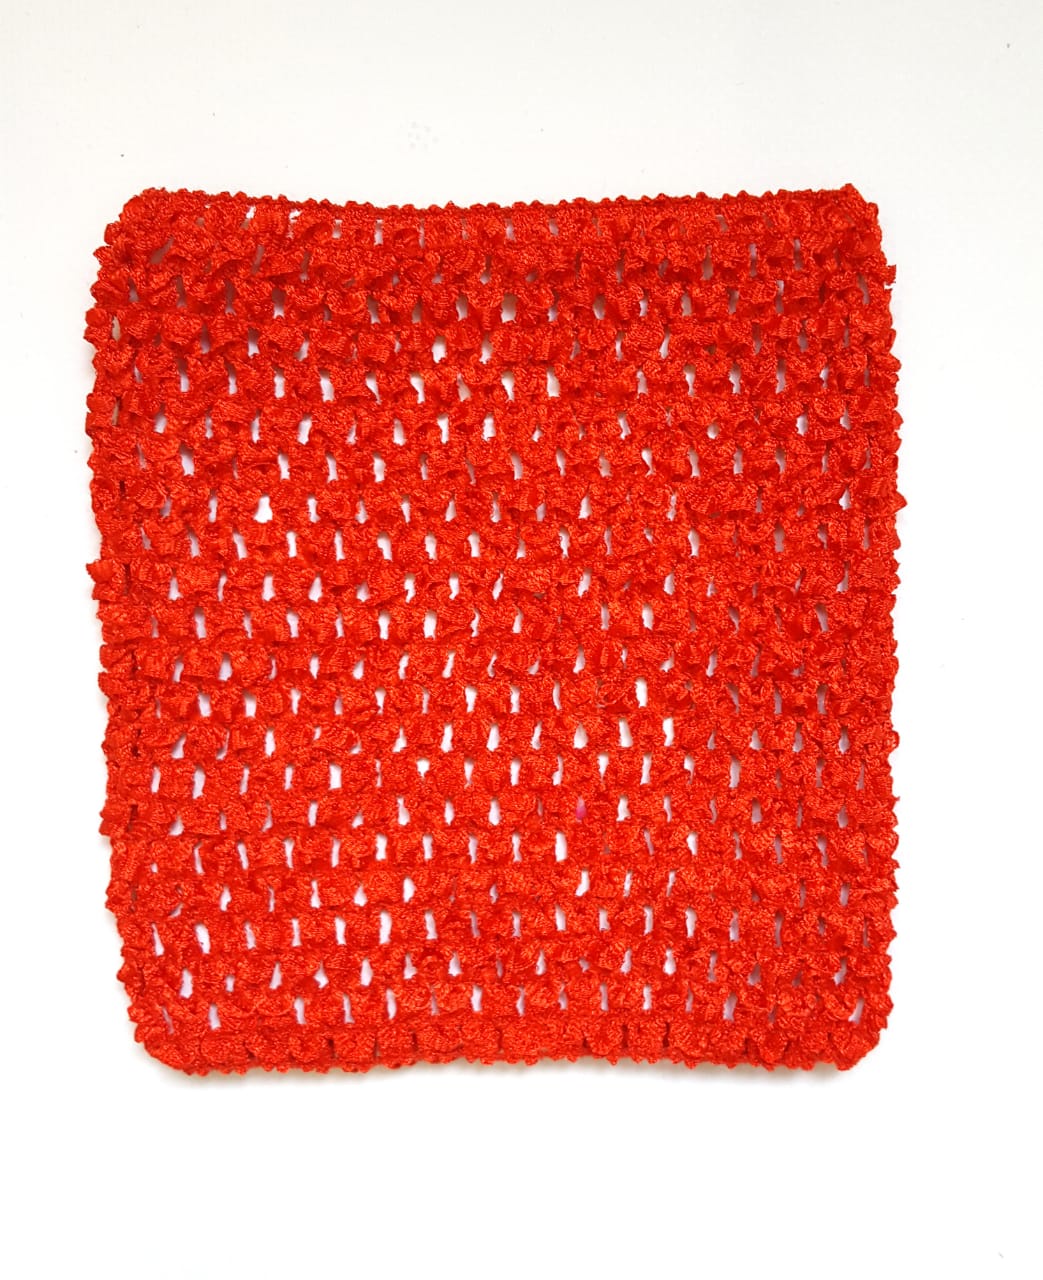 Ткань Caramelkalife Топ-резинка, размер 15*15 см. Цвет Красный.